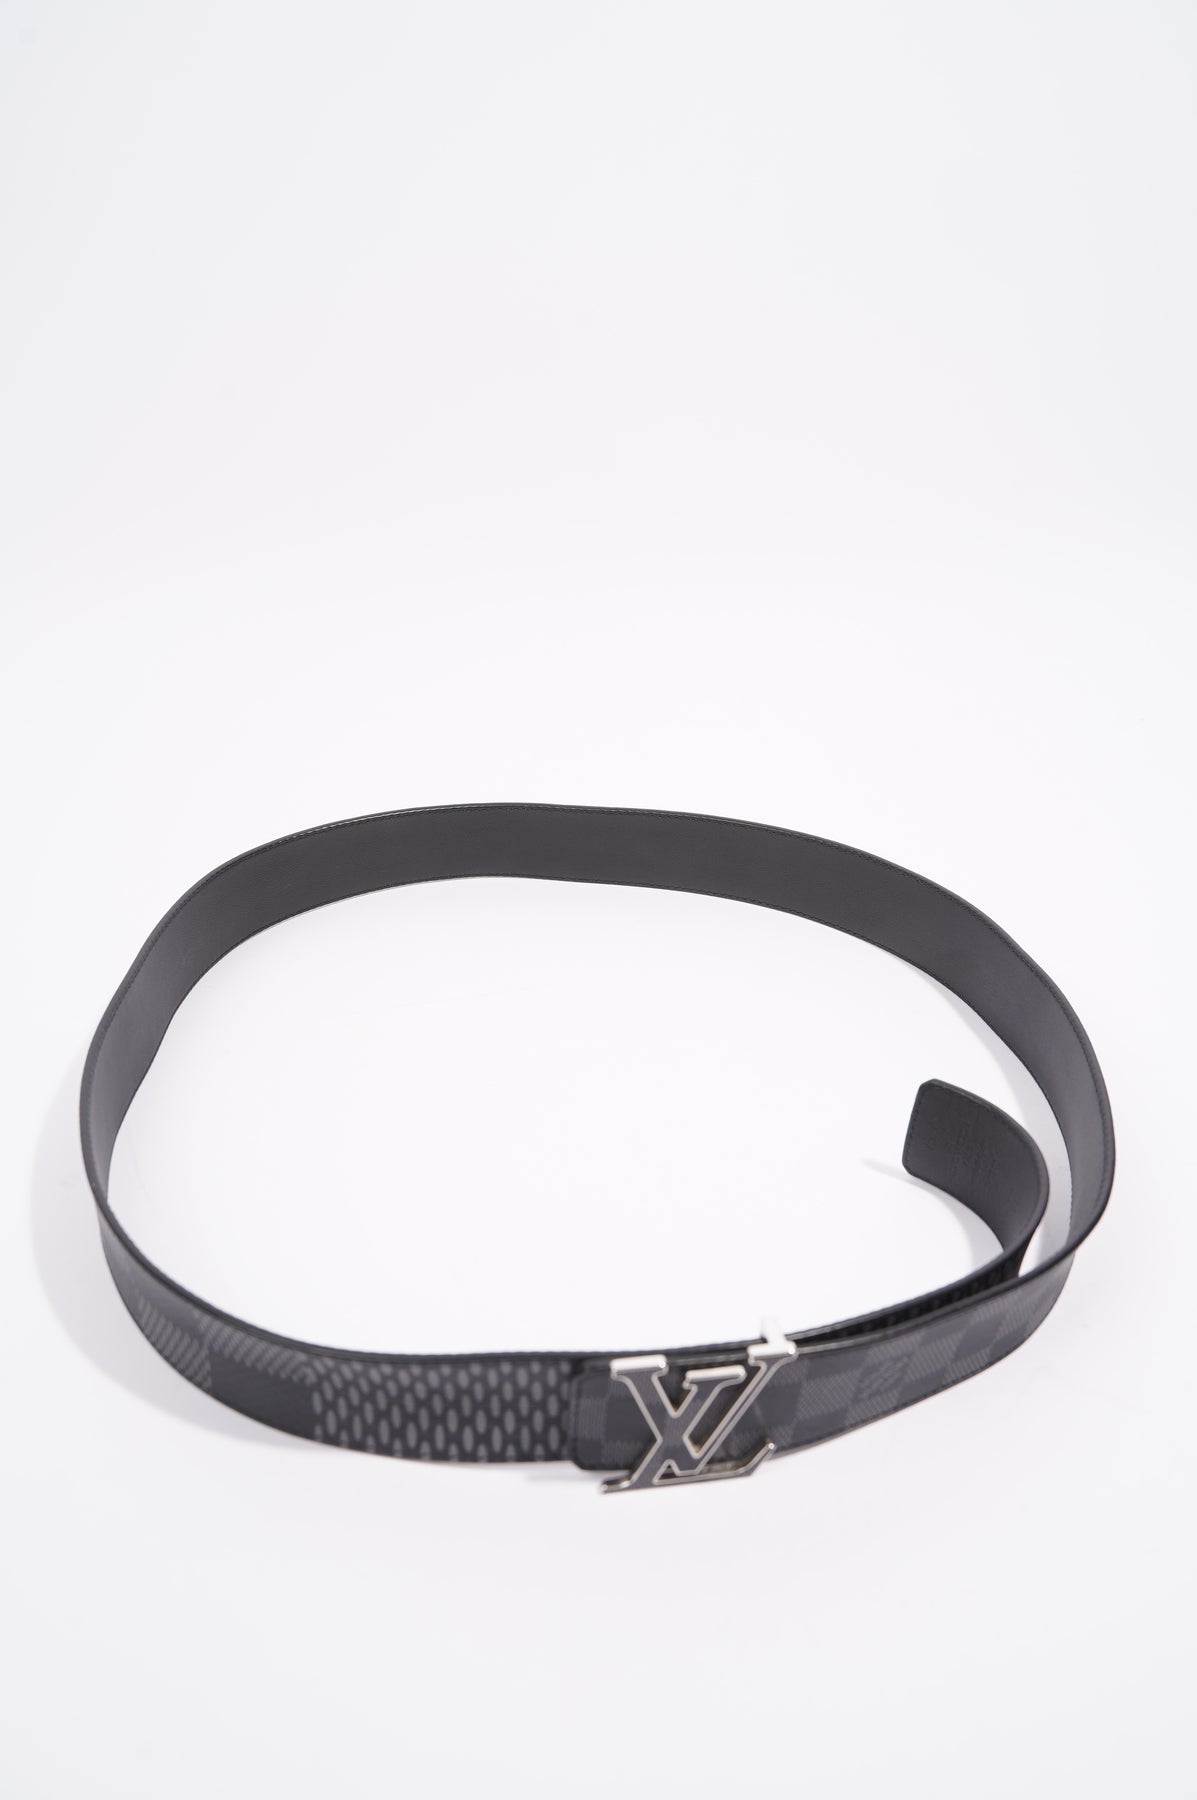 Authentic Louis Vuitton Damier Graphite LV Initials Buckle Belt